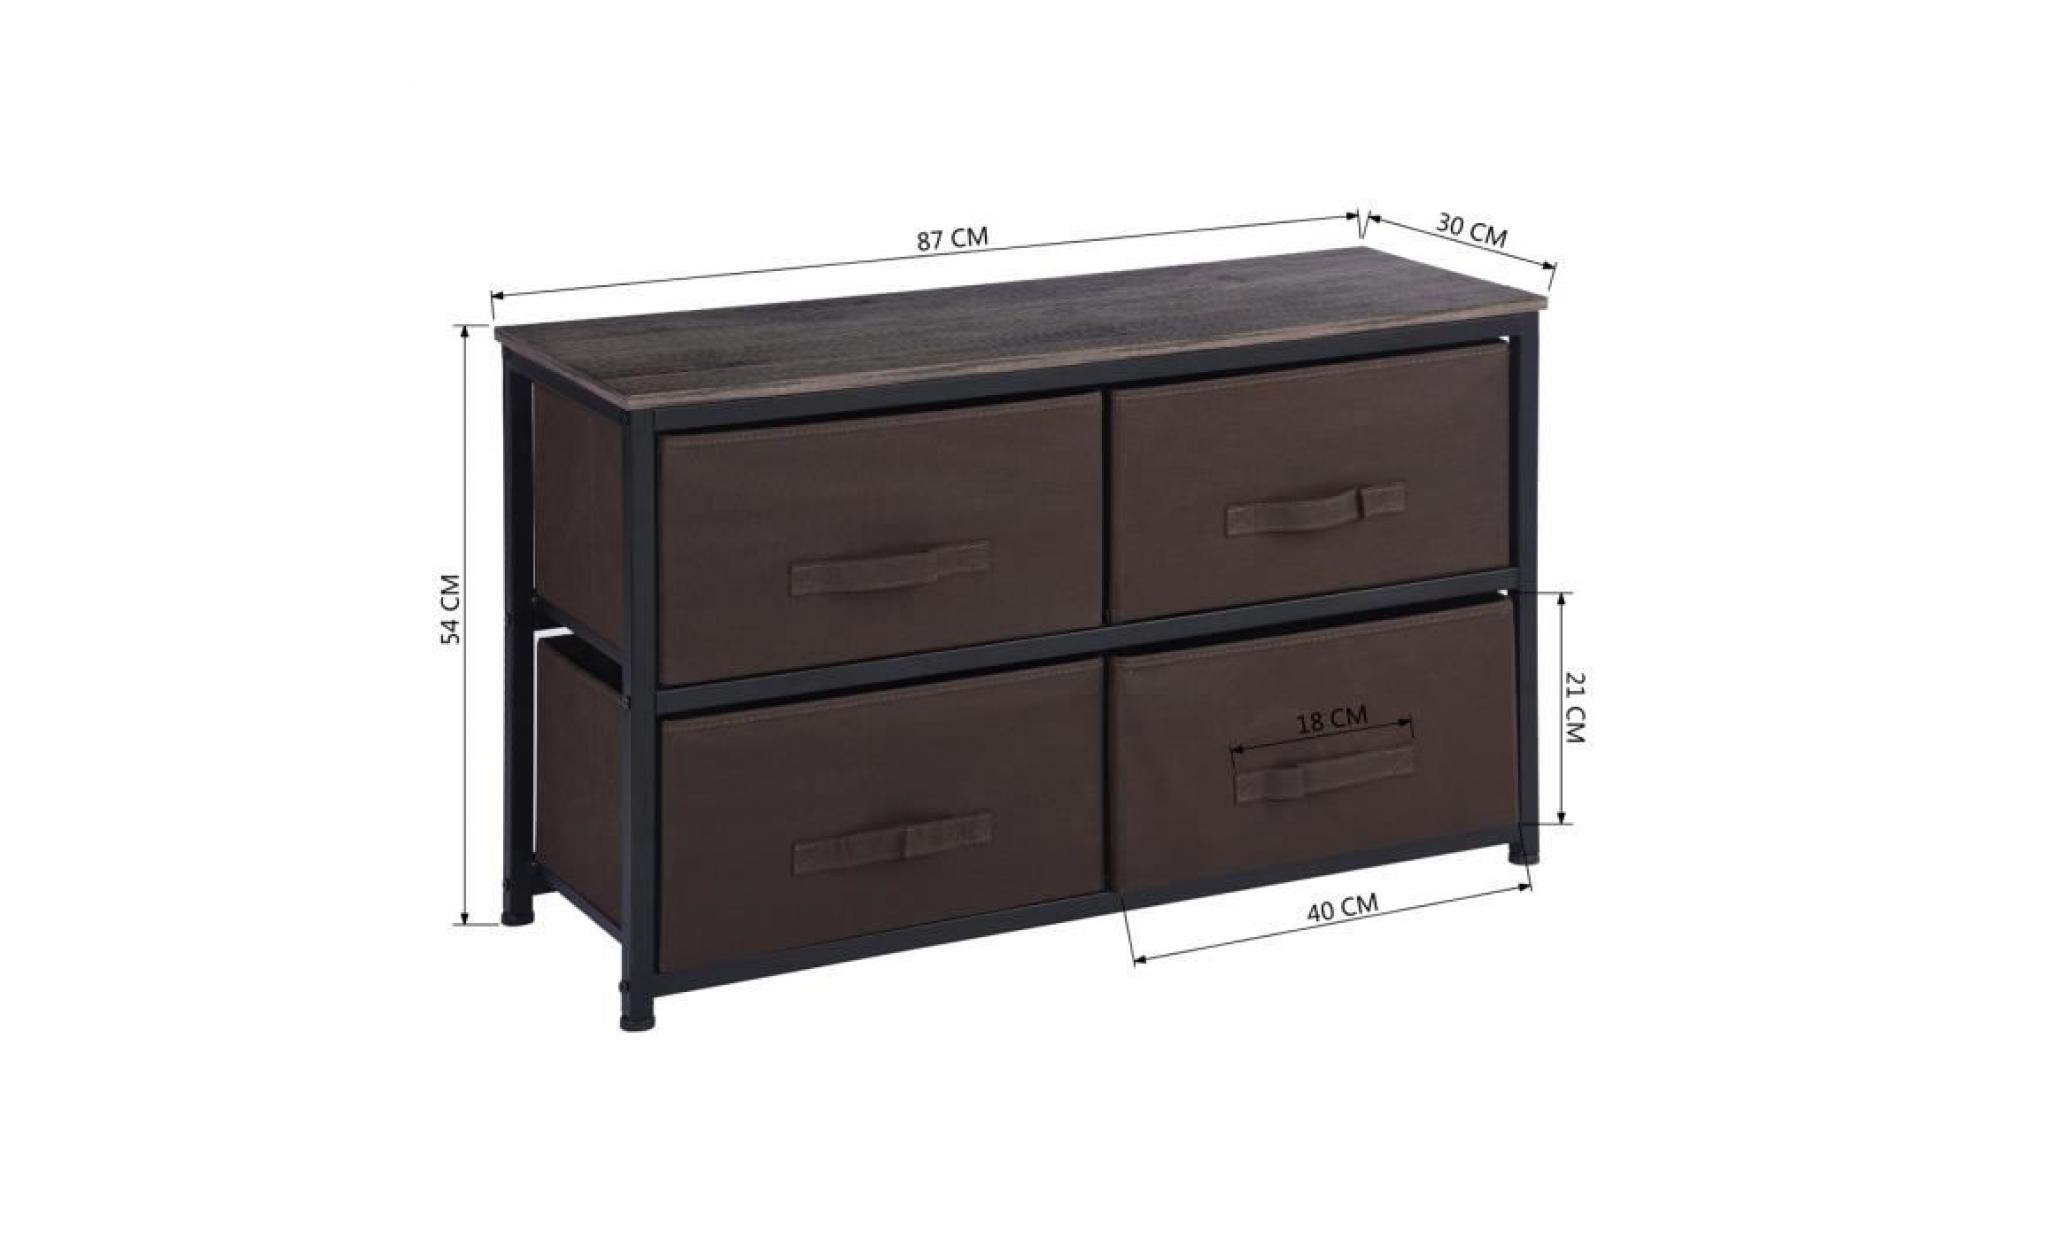 furnish 1 Étagères armoire de rangement pour économiser de l'espace rangement armature en métal planche en bois surface supérieure a pas cher